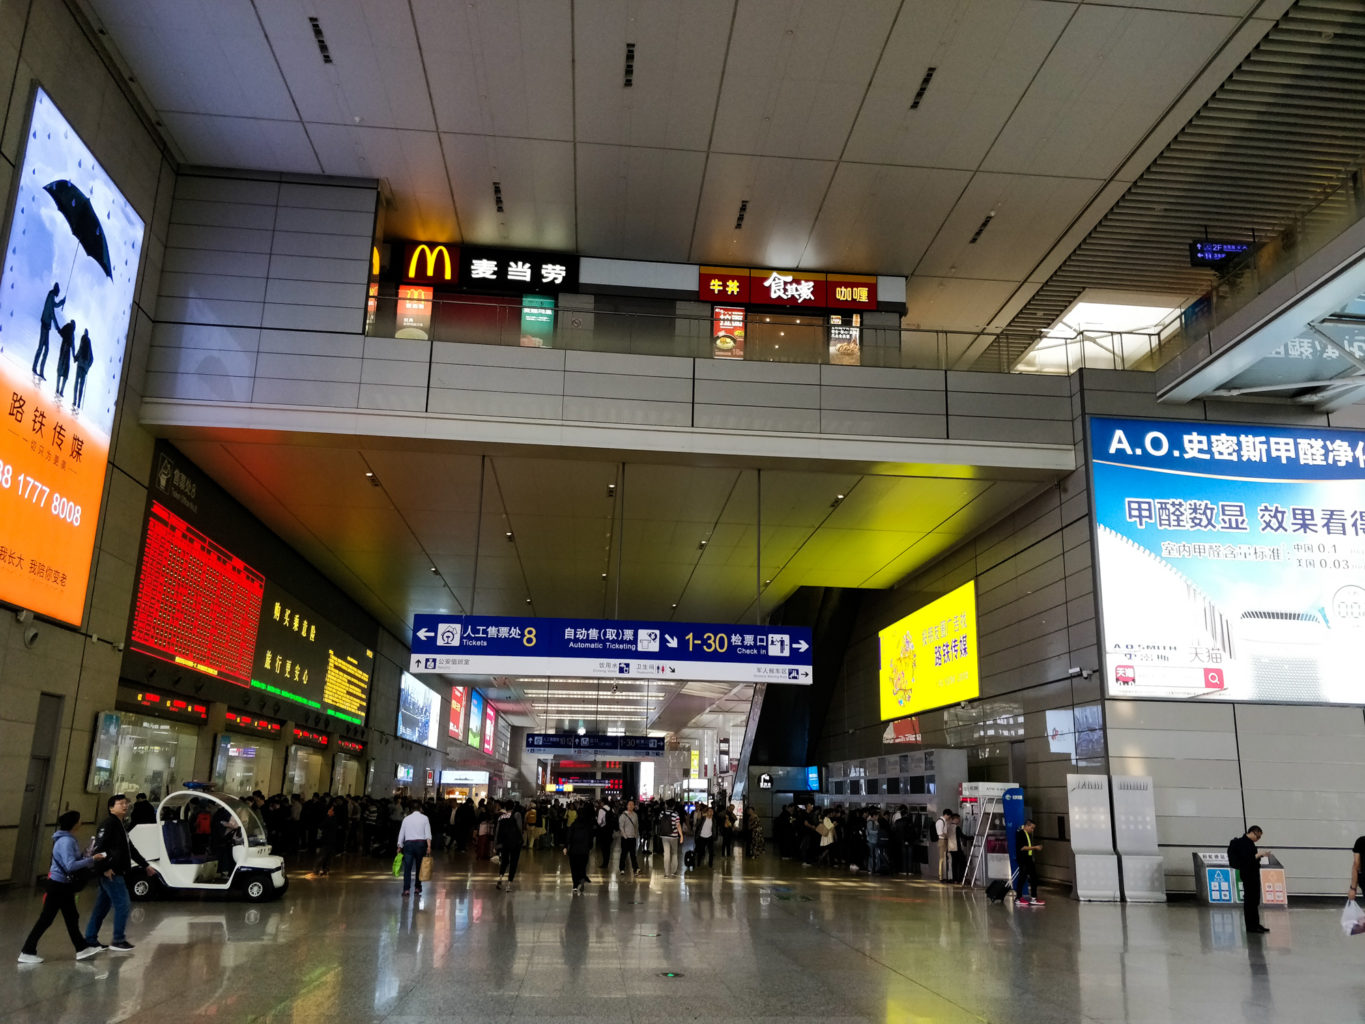 hongqiao train station